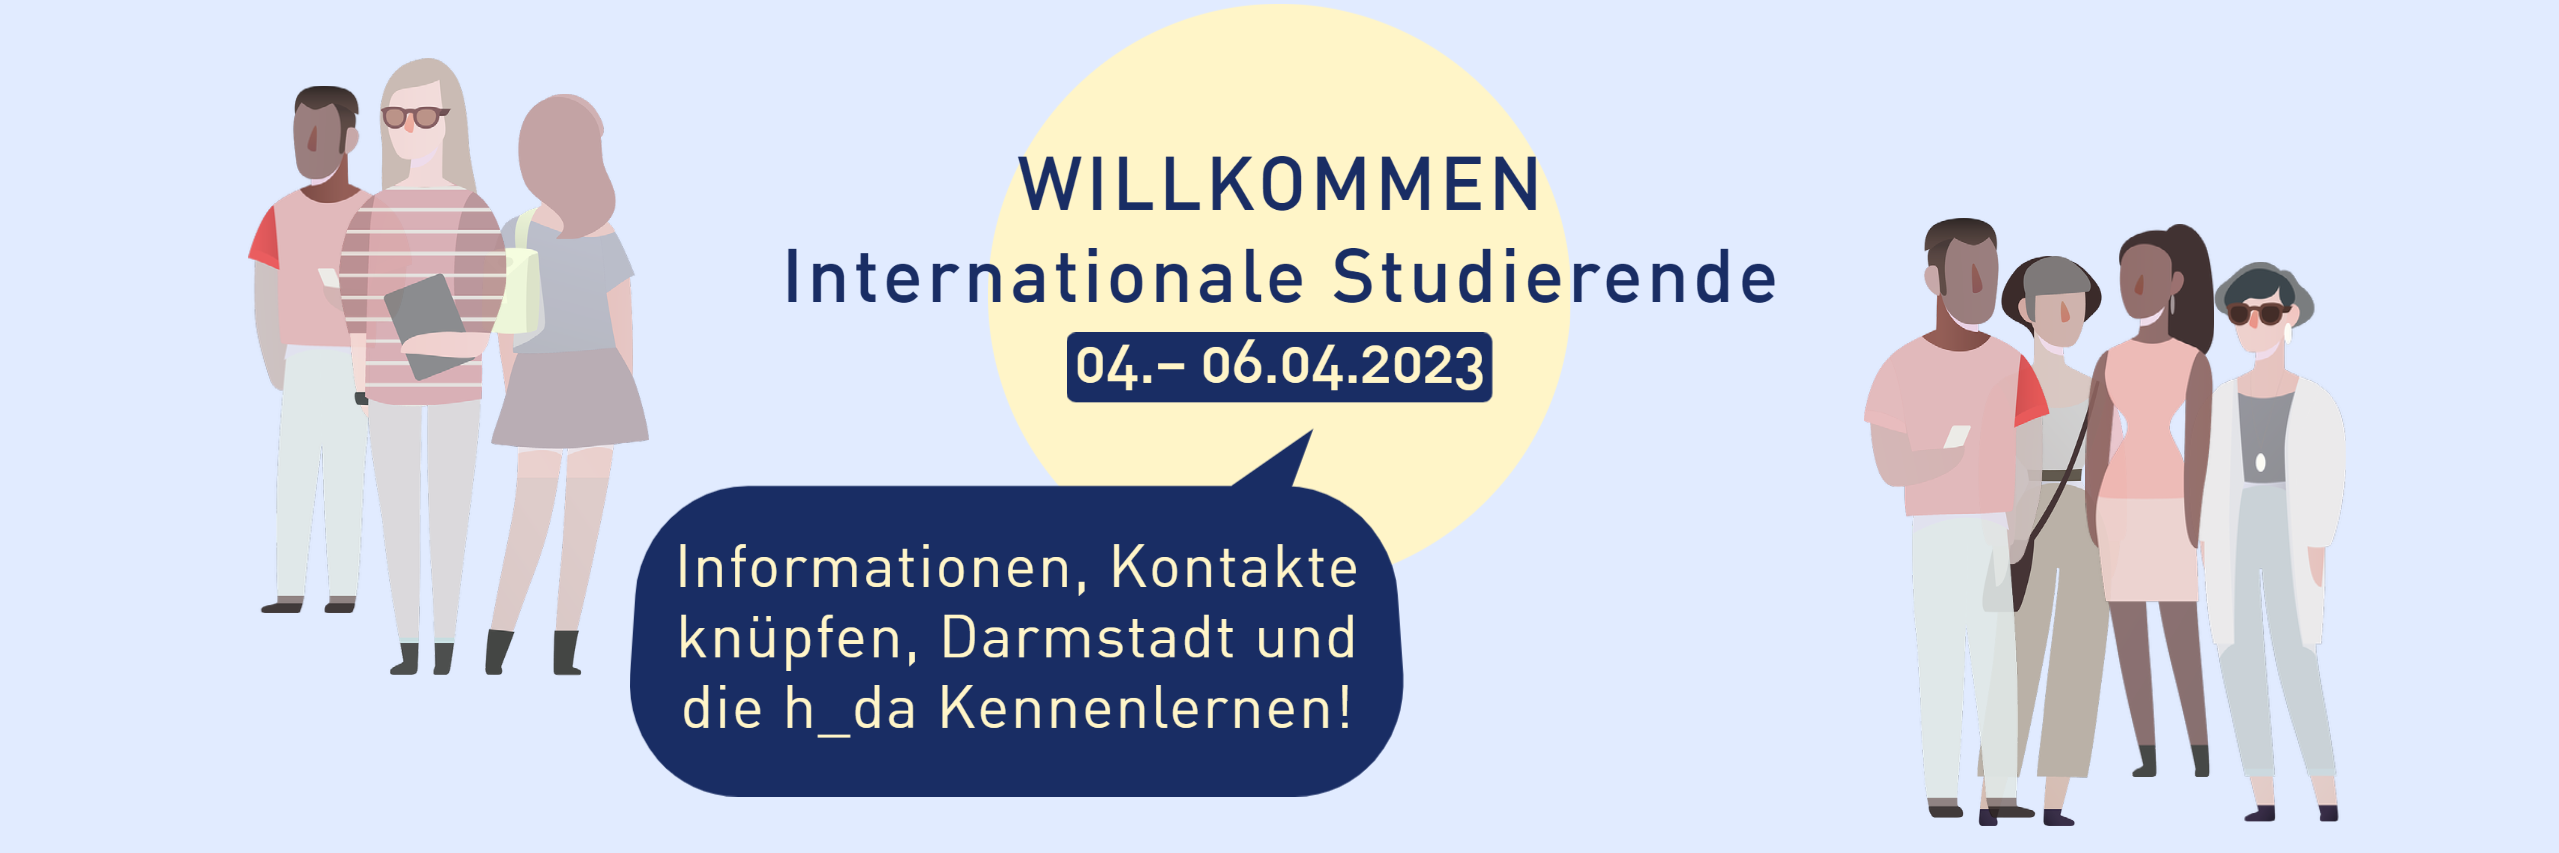 Willkommenstag für internationale Studierende vom 04. bis 06.04.